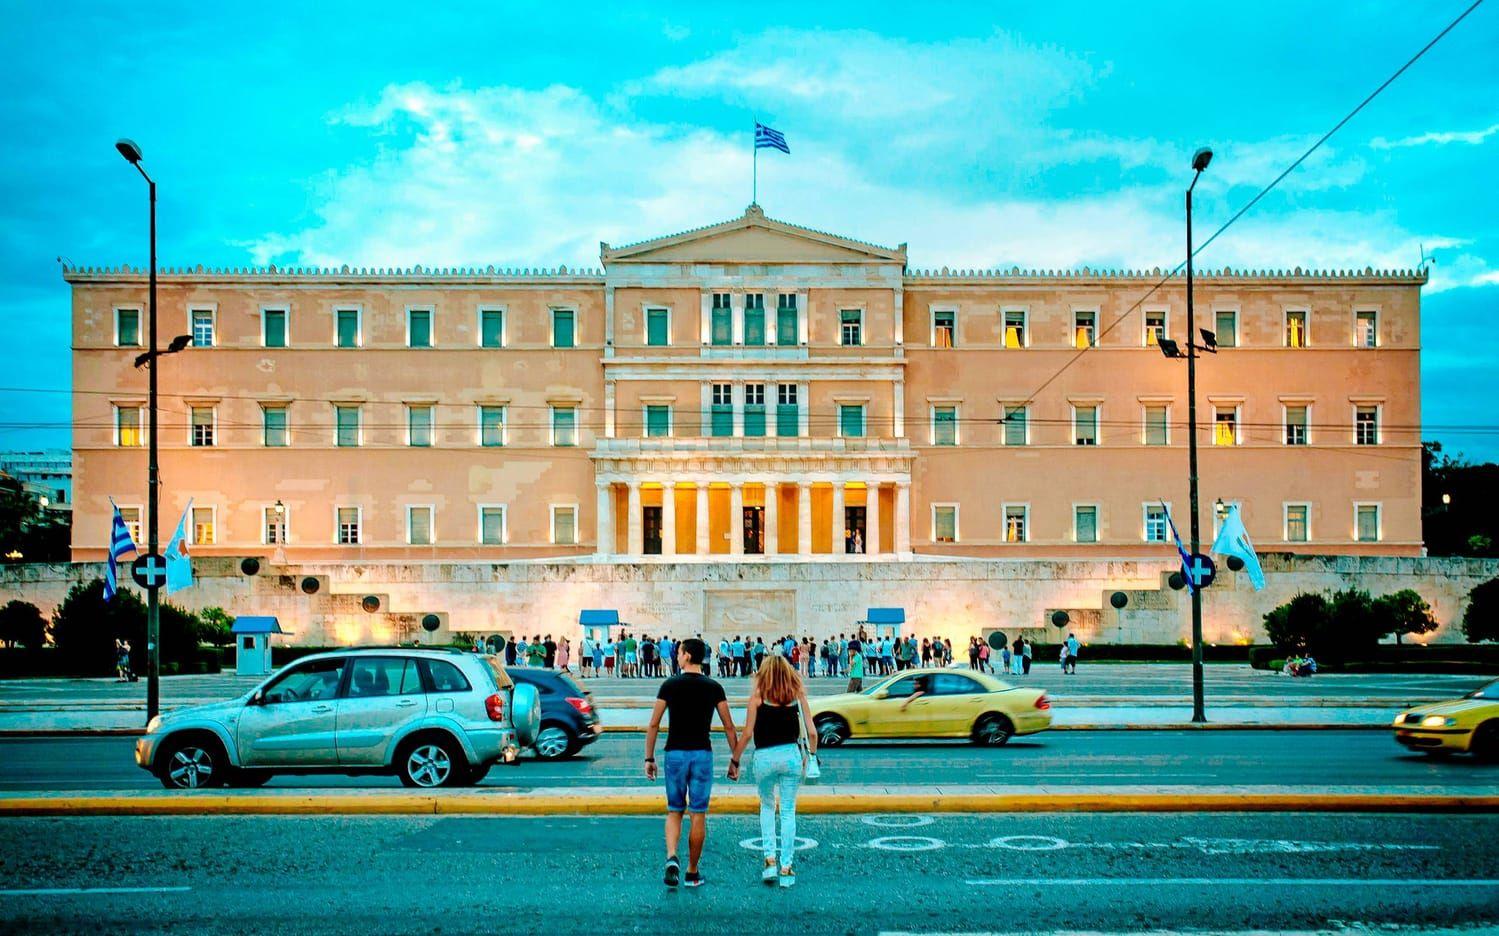 Det grekiska parlamentet i Aten. Här hölls ofta demonstrationer i den ekonomiska krisens första år. Nu försöker befolkningen gå vidare. Bild: Olof Ohlsson.